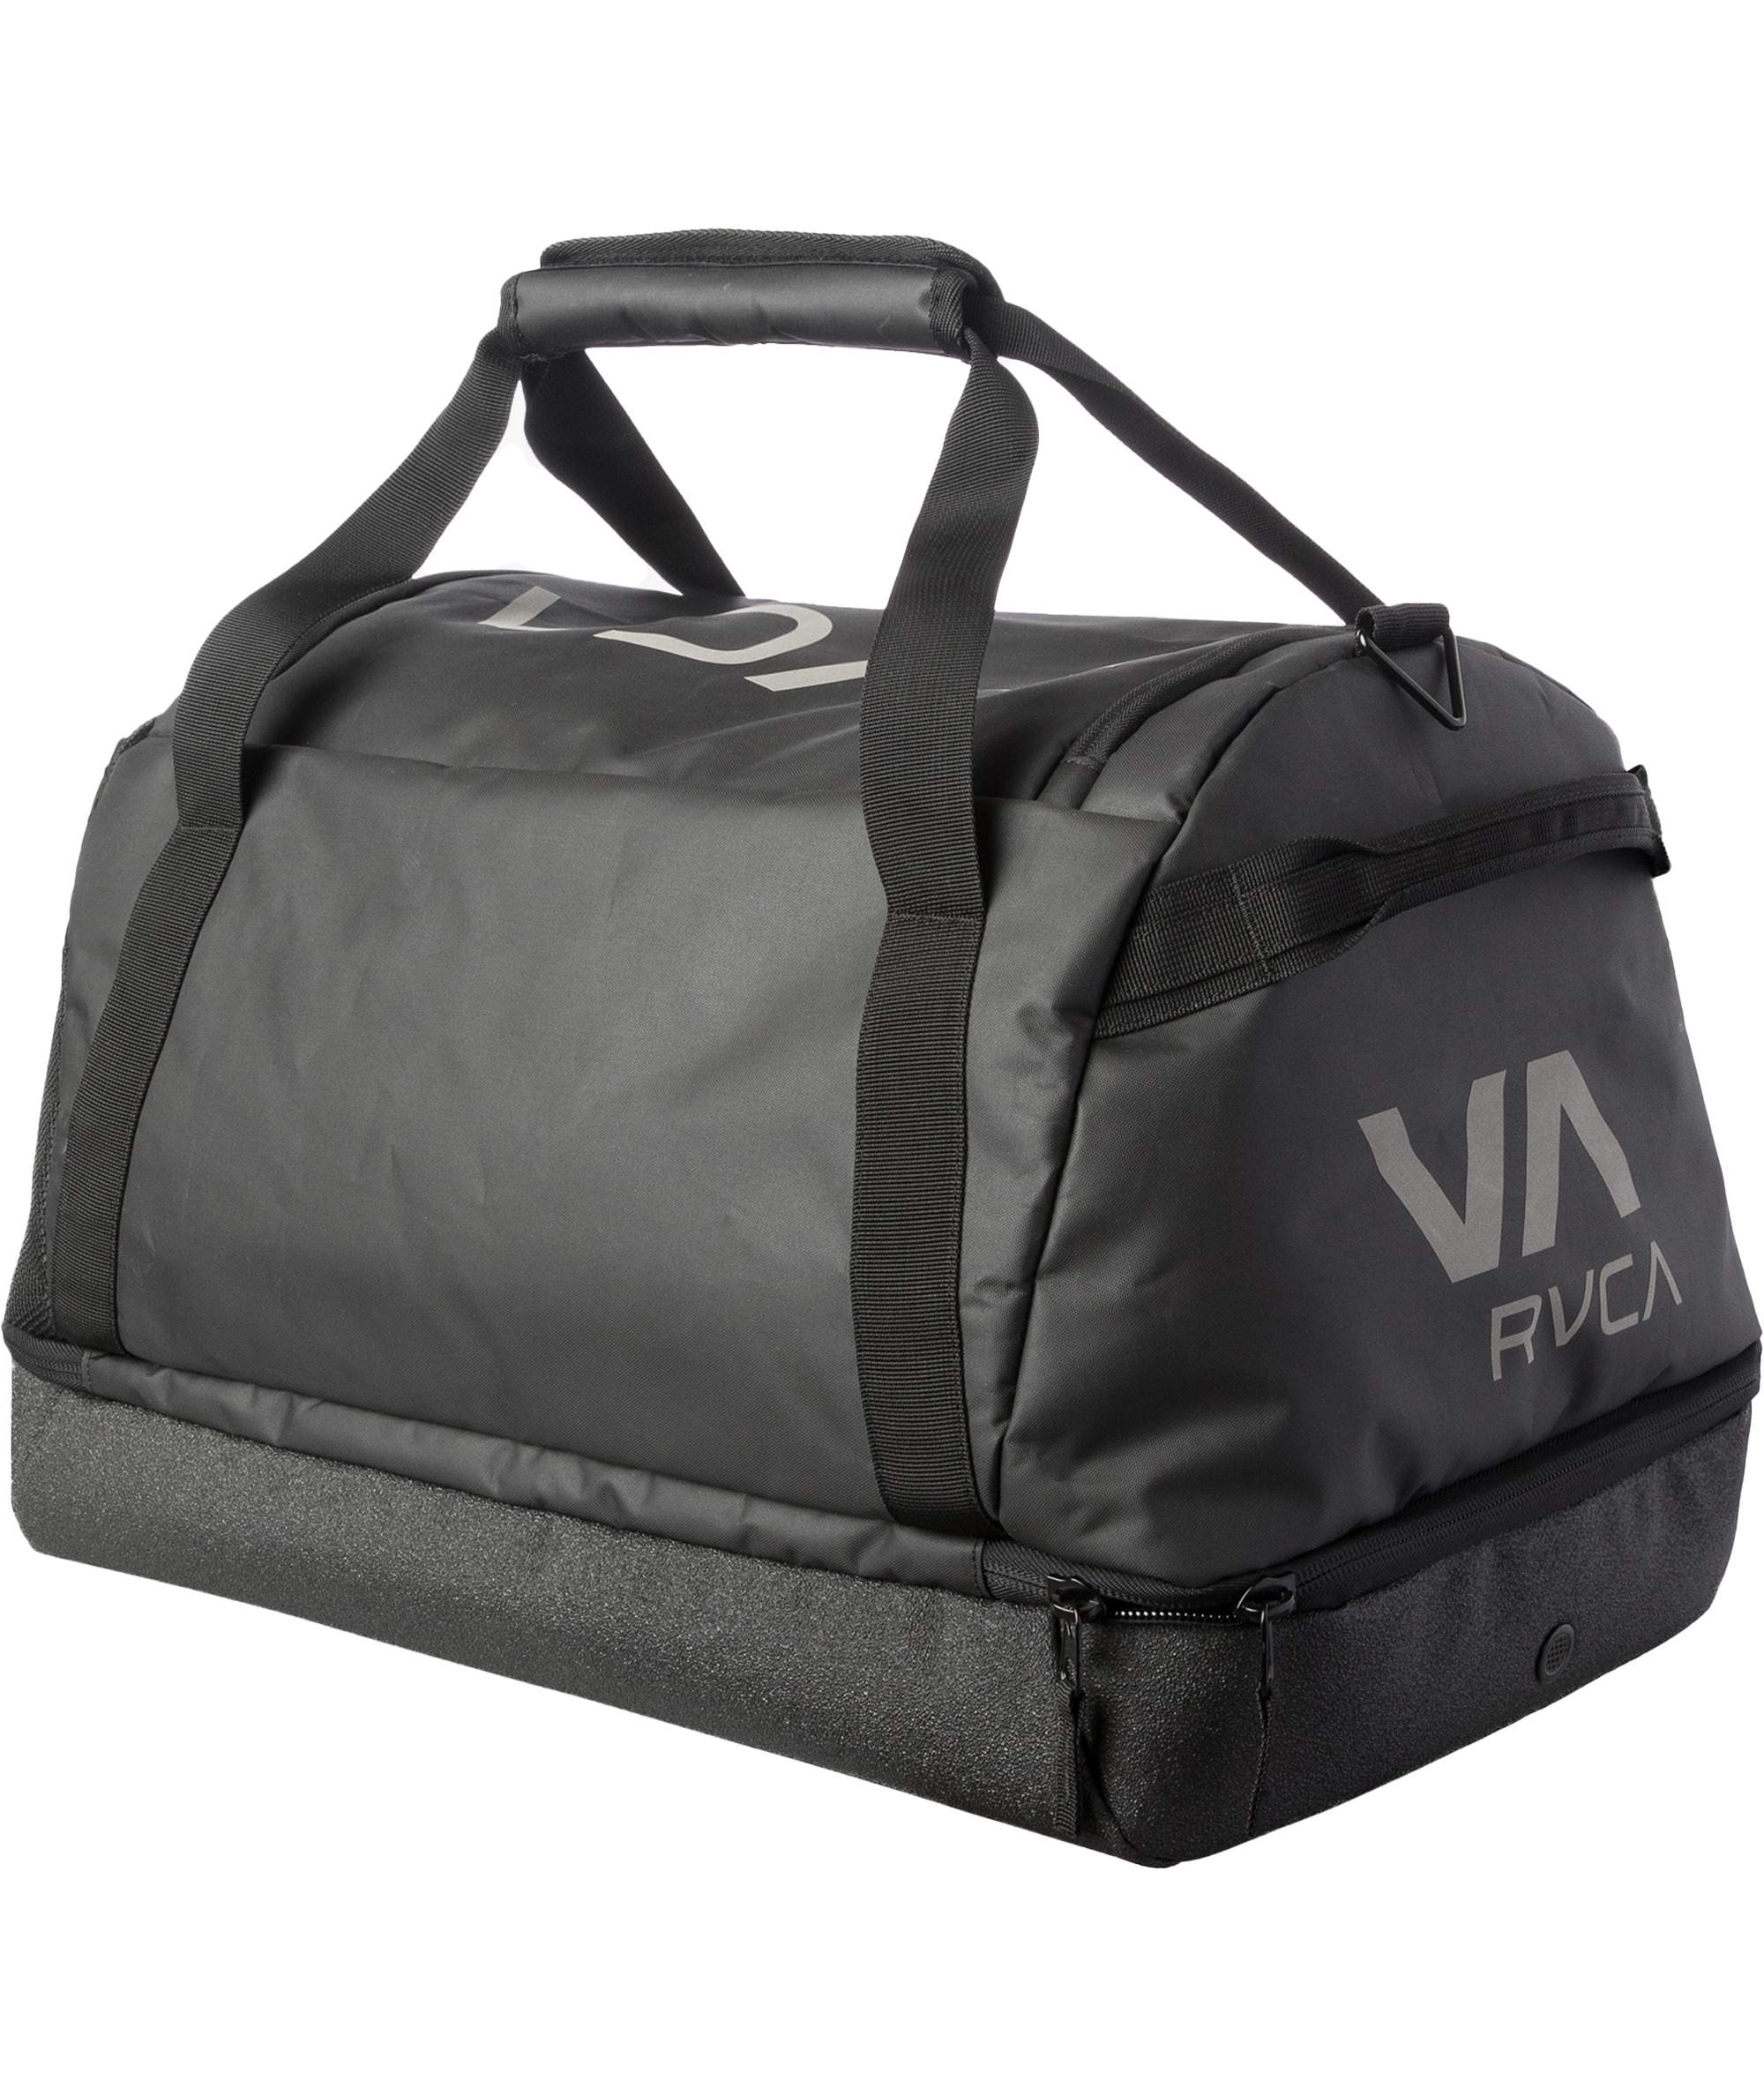 RVCA- VA Gear Bag